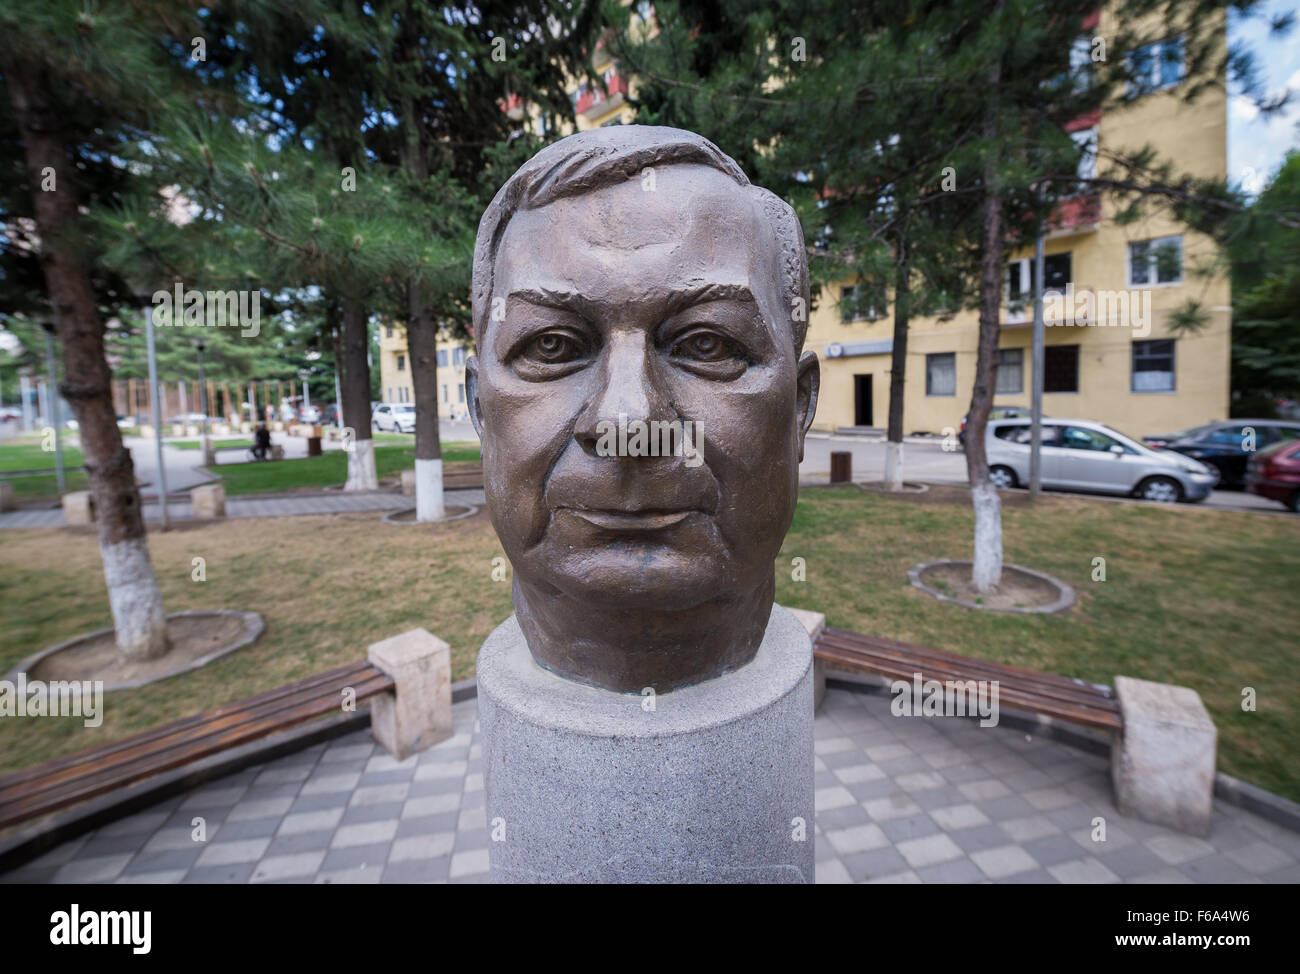 The monument of former Polish President Lech Kaczynski in Tbilisi, Georgia Stock Photo